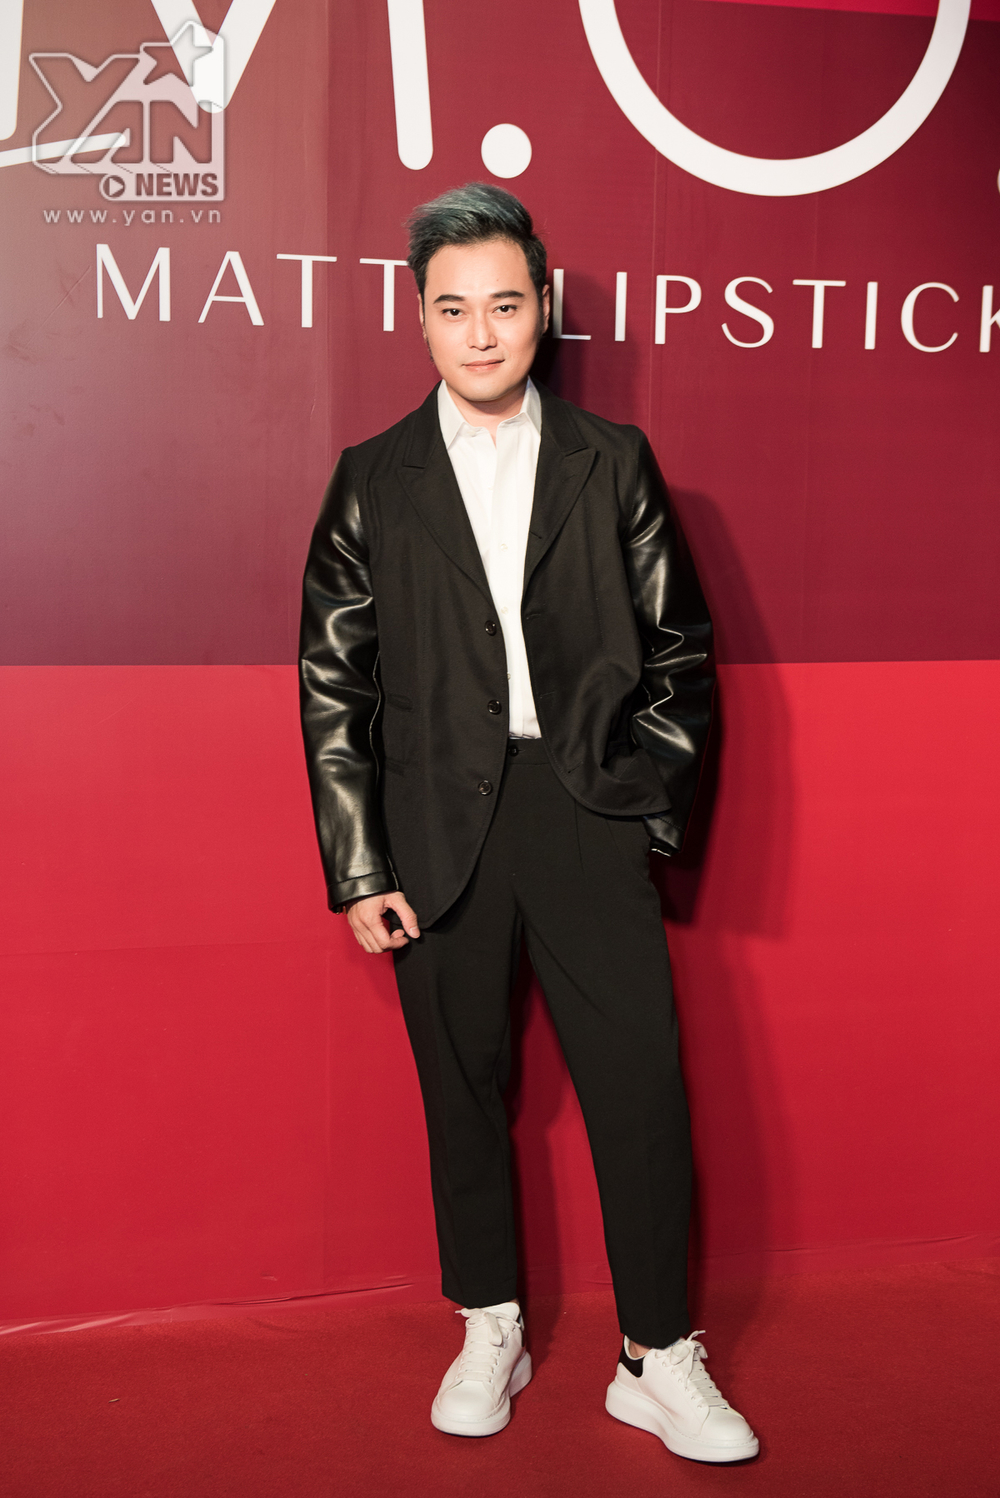 
Nam ca sĩ Quang Vinh diện đồ cực bảnh với bộ suit cùng giày thể thao vô cùng trẻ trung.